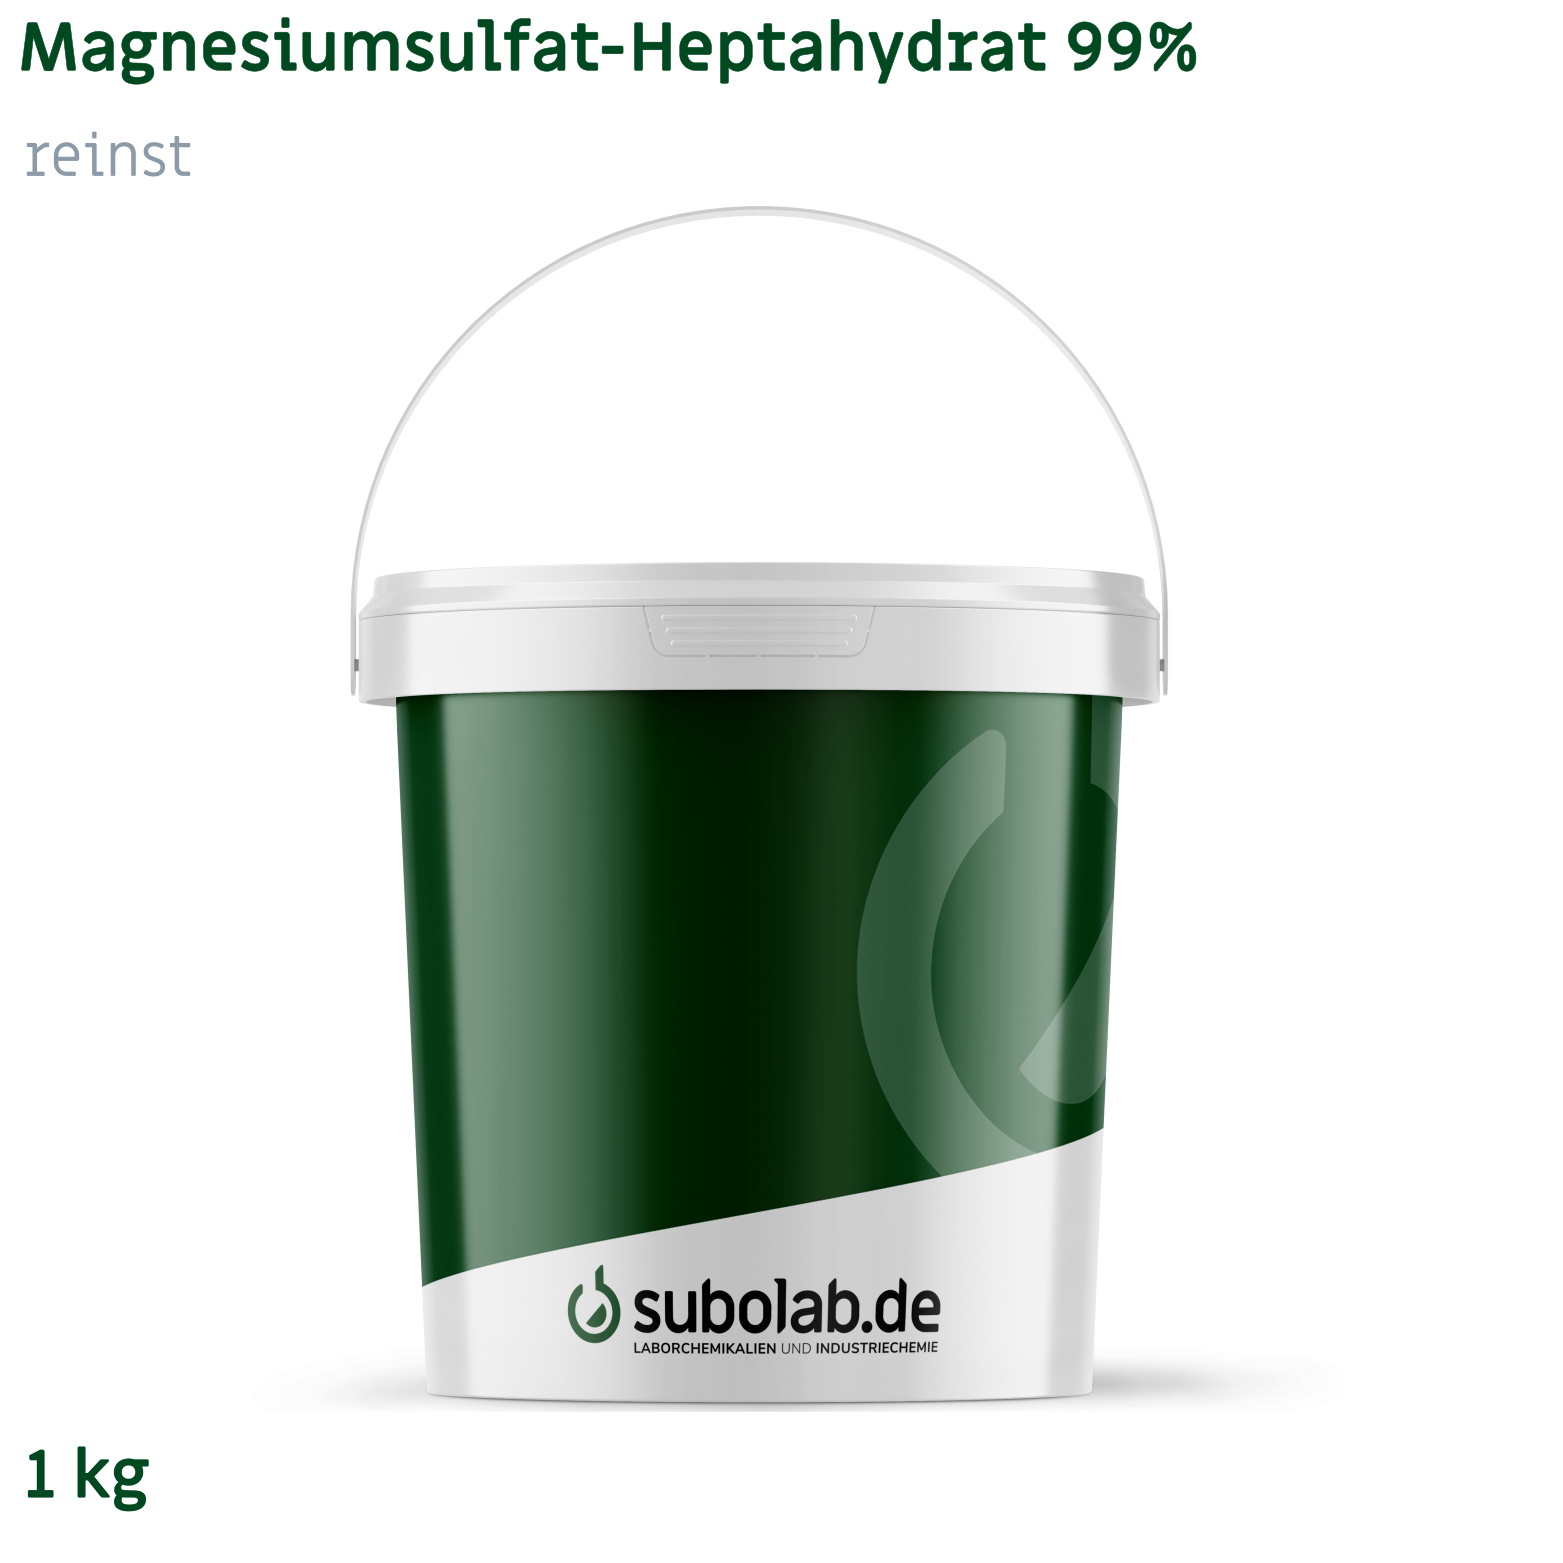 Bild von Magnesiumsulfat - Heptahydrat 99% reinst (1 kg)